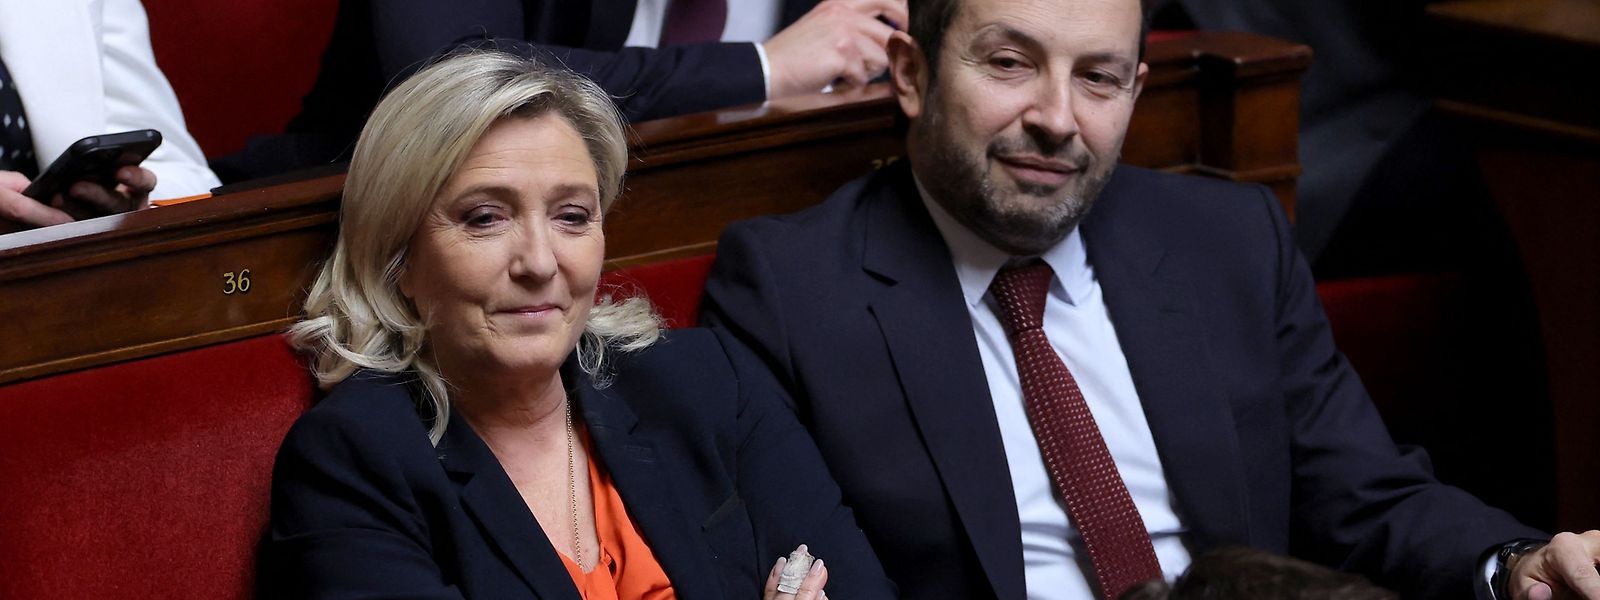 Wenn zwei sich streiten, freut sich die Dritte: Marien Le Pen und ihr "Rassemblement National" könnten aus den Protesten gegen die geplante Rentenreform politisch gestärkt hervorgehen.